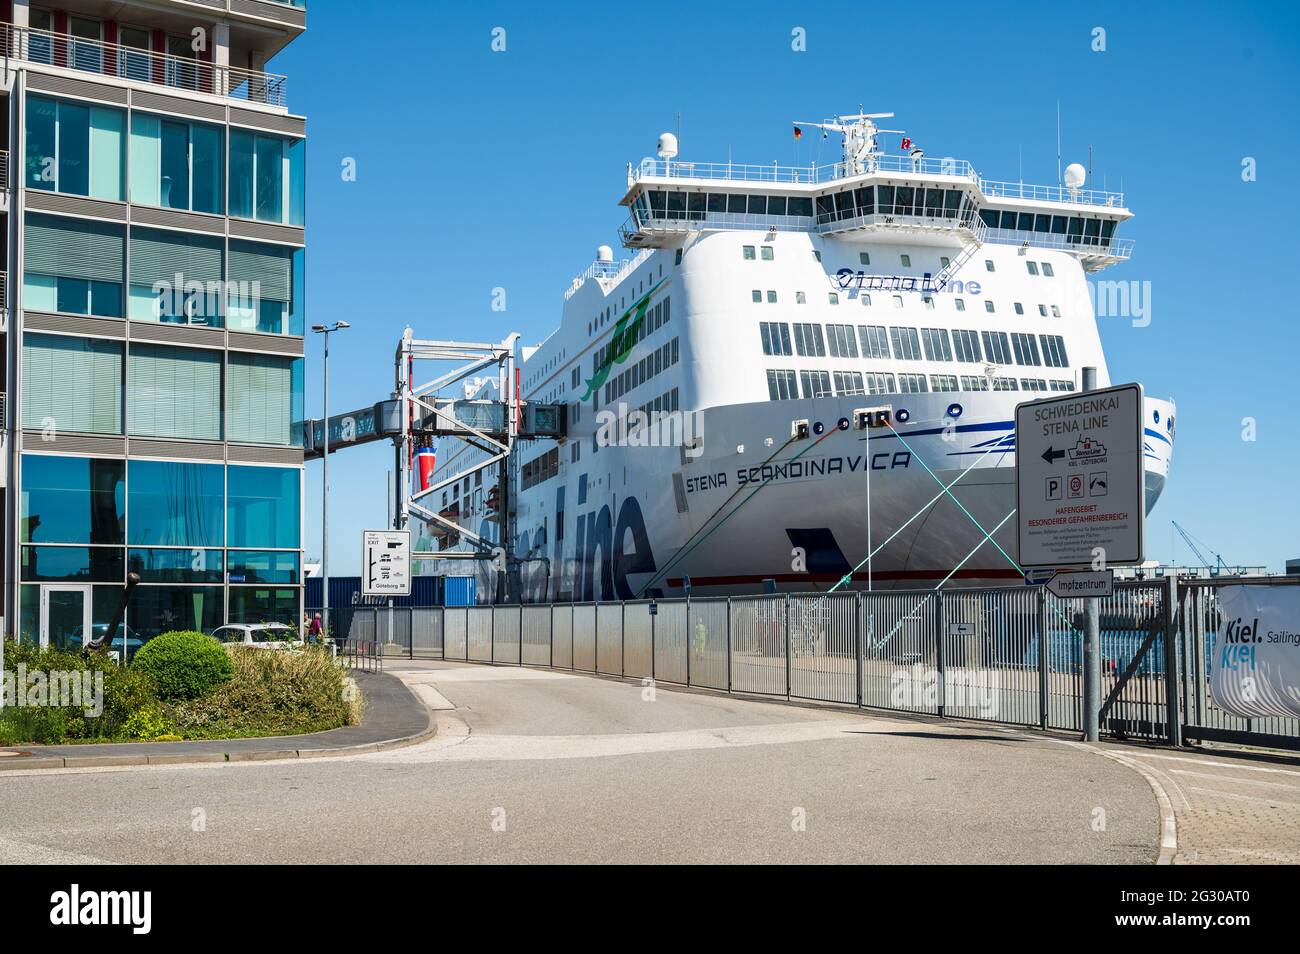 Kieler Hafen am Schwedenkai die aus Göteborg kommende Personen- und Autofähre Stena Scandinavica der Stena Line bedient den Kieler Hafen mit einer täg Banque D'Images